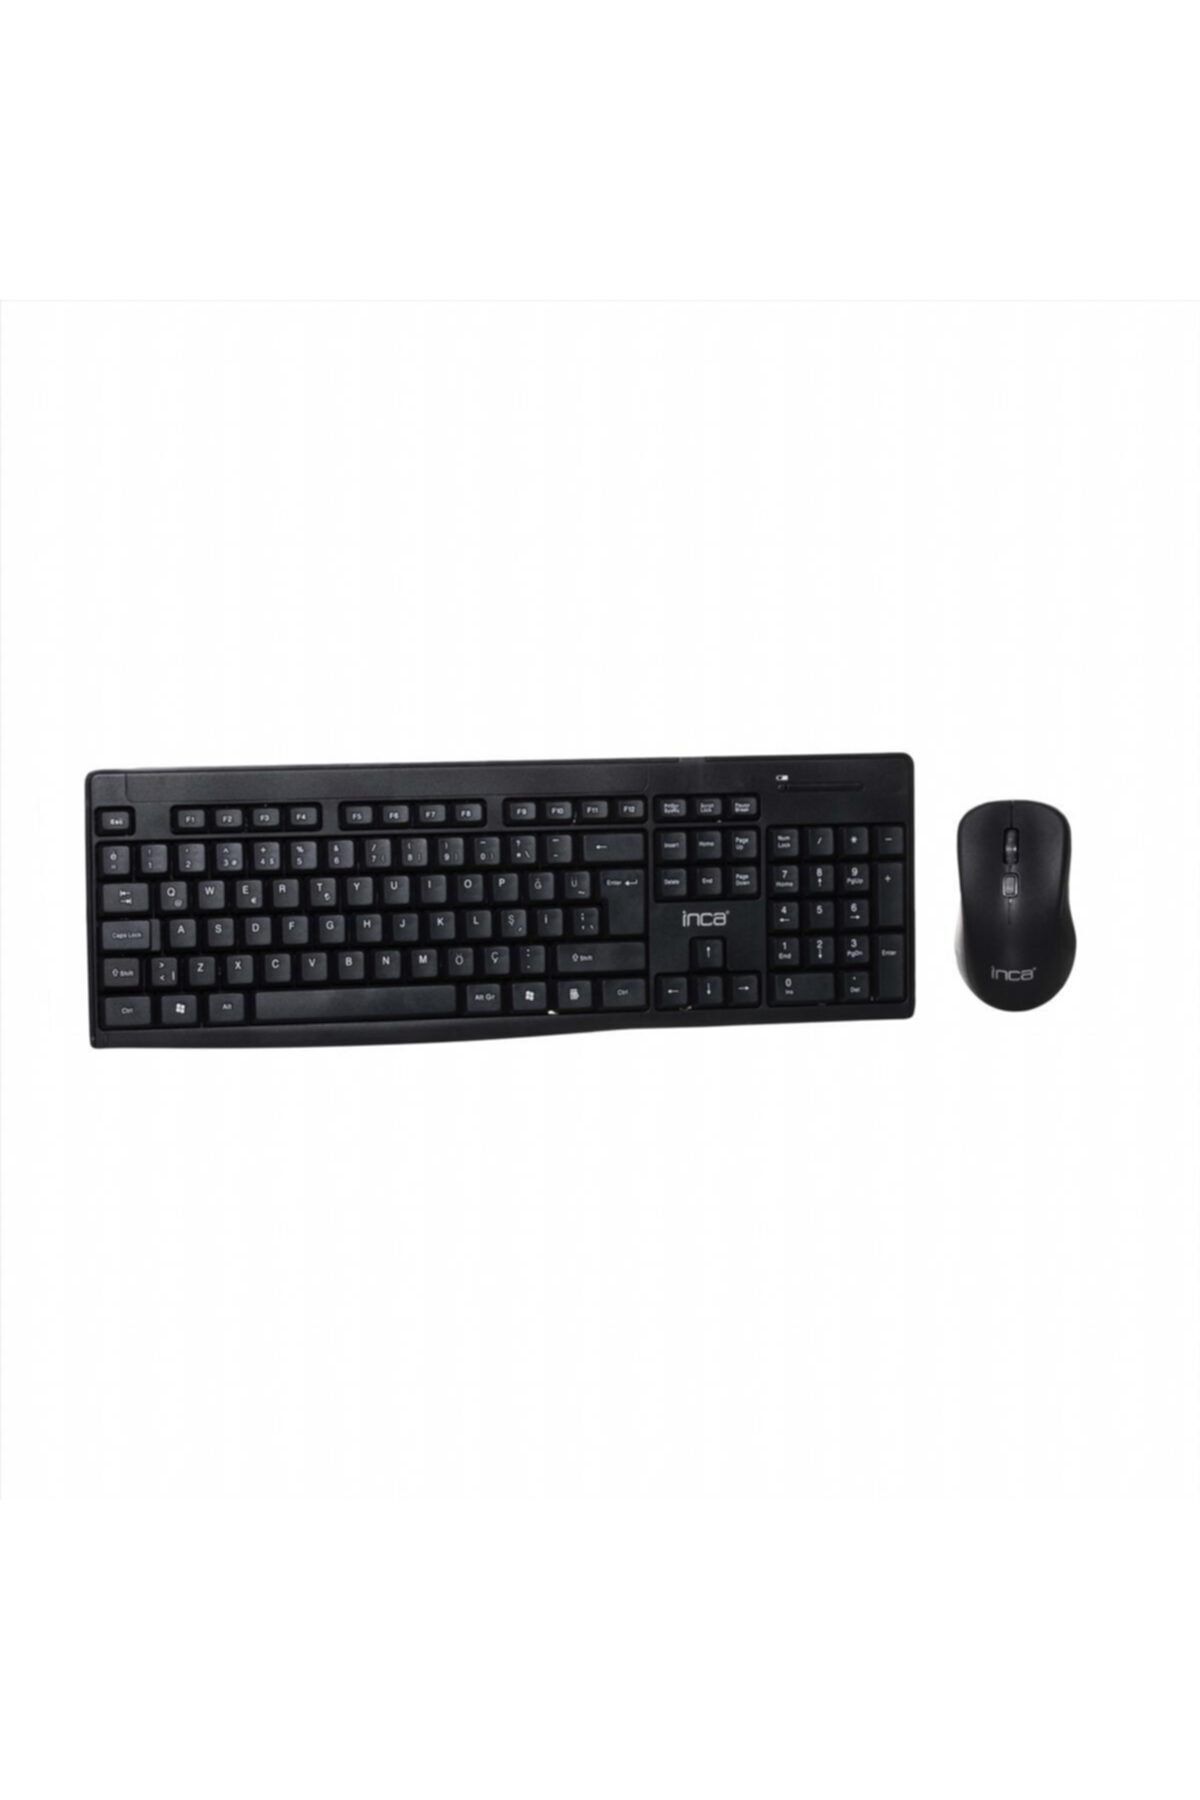 Inca Klavye Mouse Seti Kablosuz Dayanıklı Soft Tasarım Iws-539t Siyah